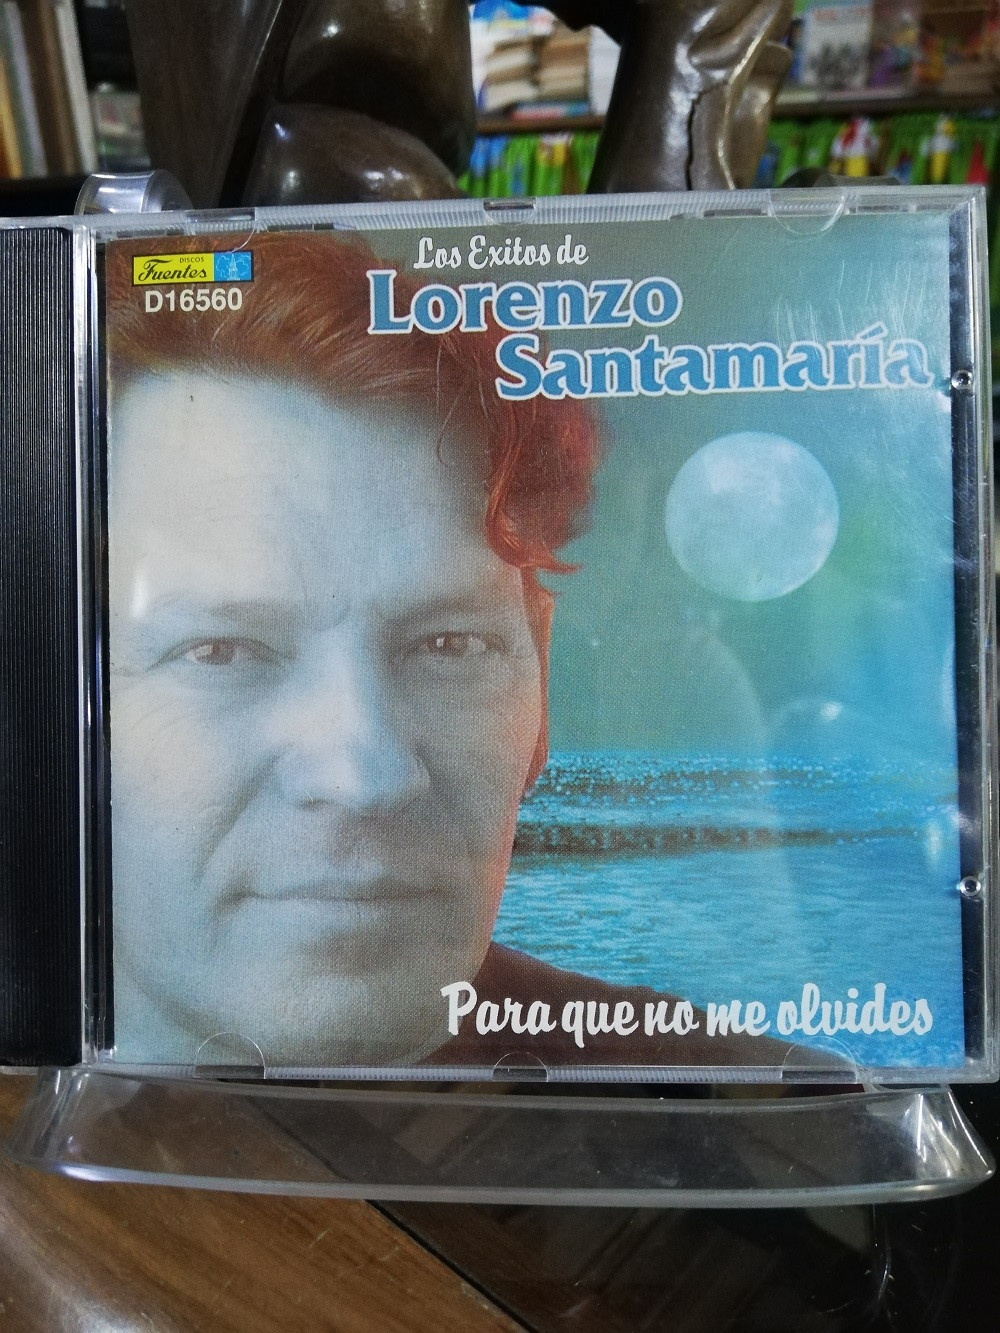 Imagen CD LORENZO SANTAMARIA - PARA QUE NO ME OLVIDES